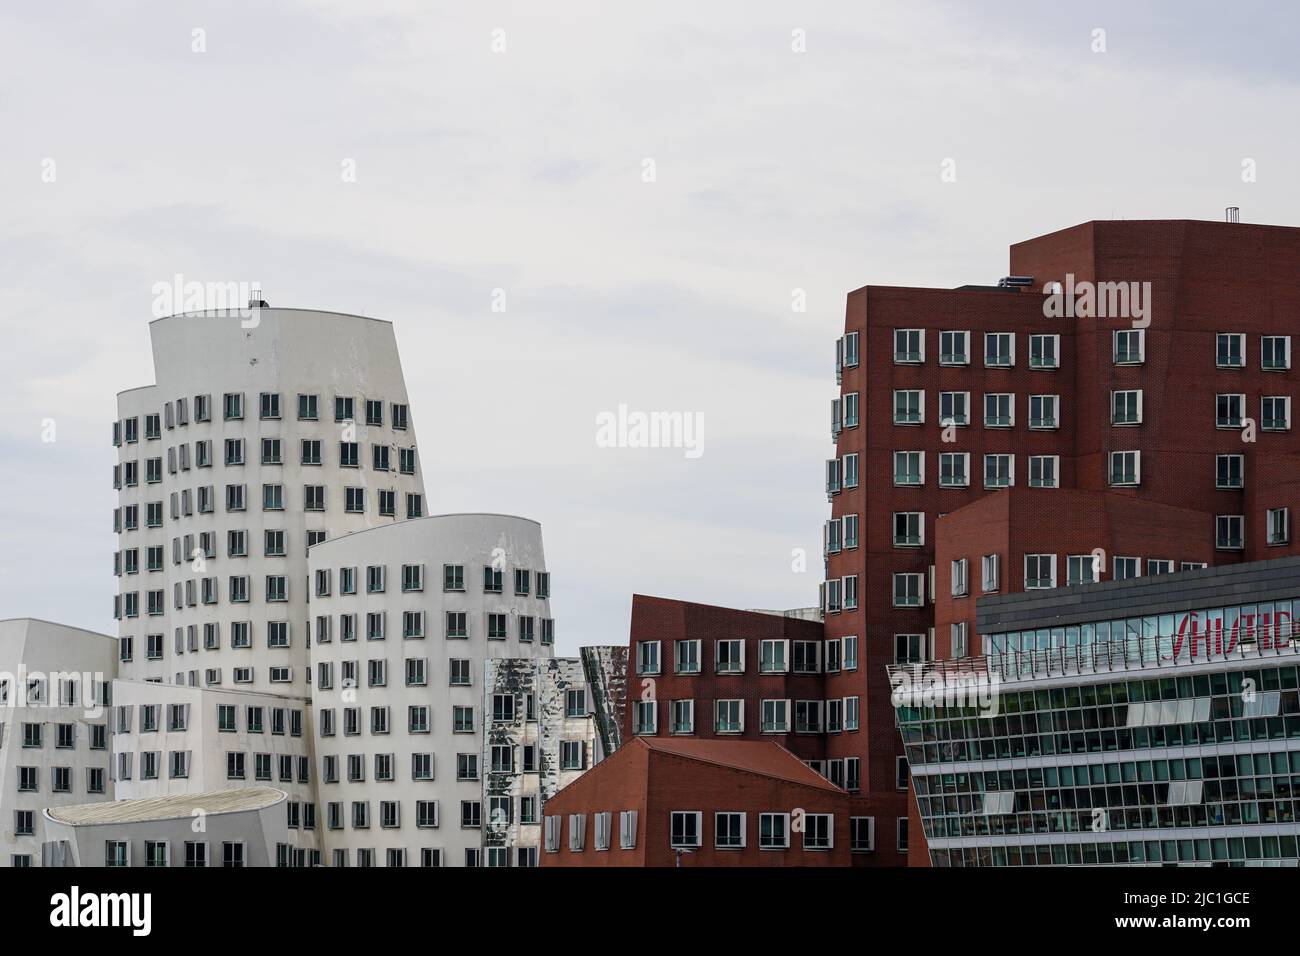 Skulpturale Bauten des Architekten Frank O. Gehry am Medienhafen Düsseldorf, Nordrhein-Westfalen, Deutschland, 23,5.22. Stockfoto